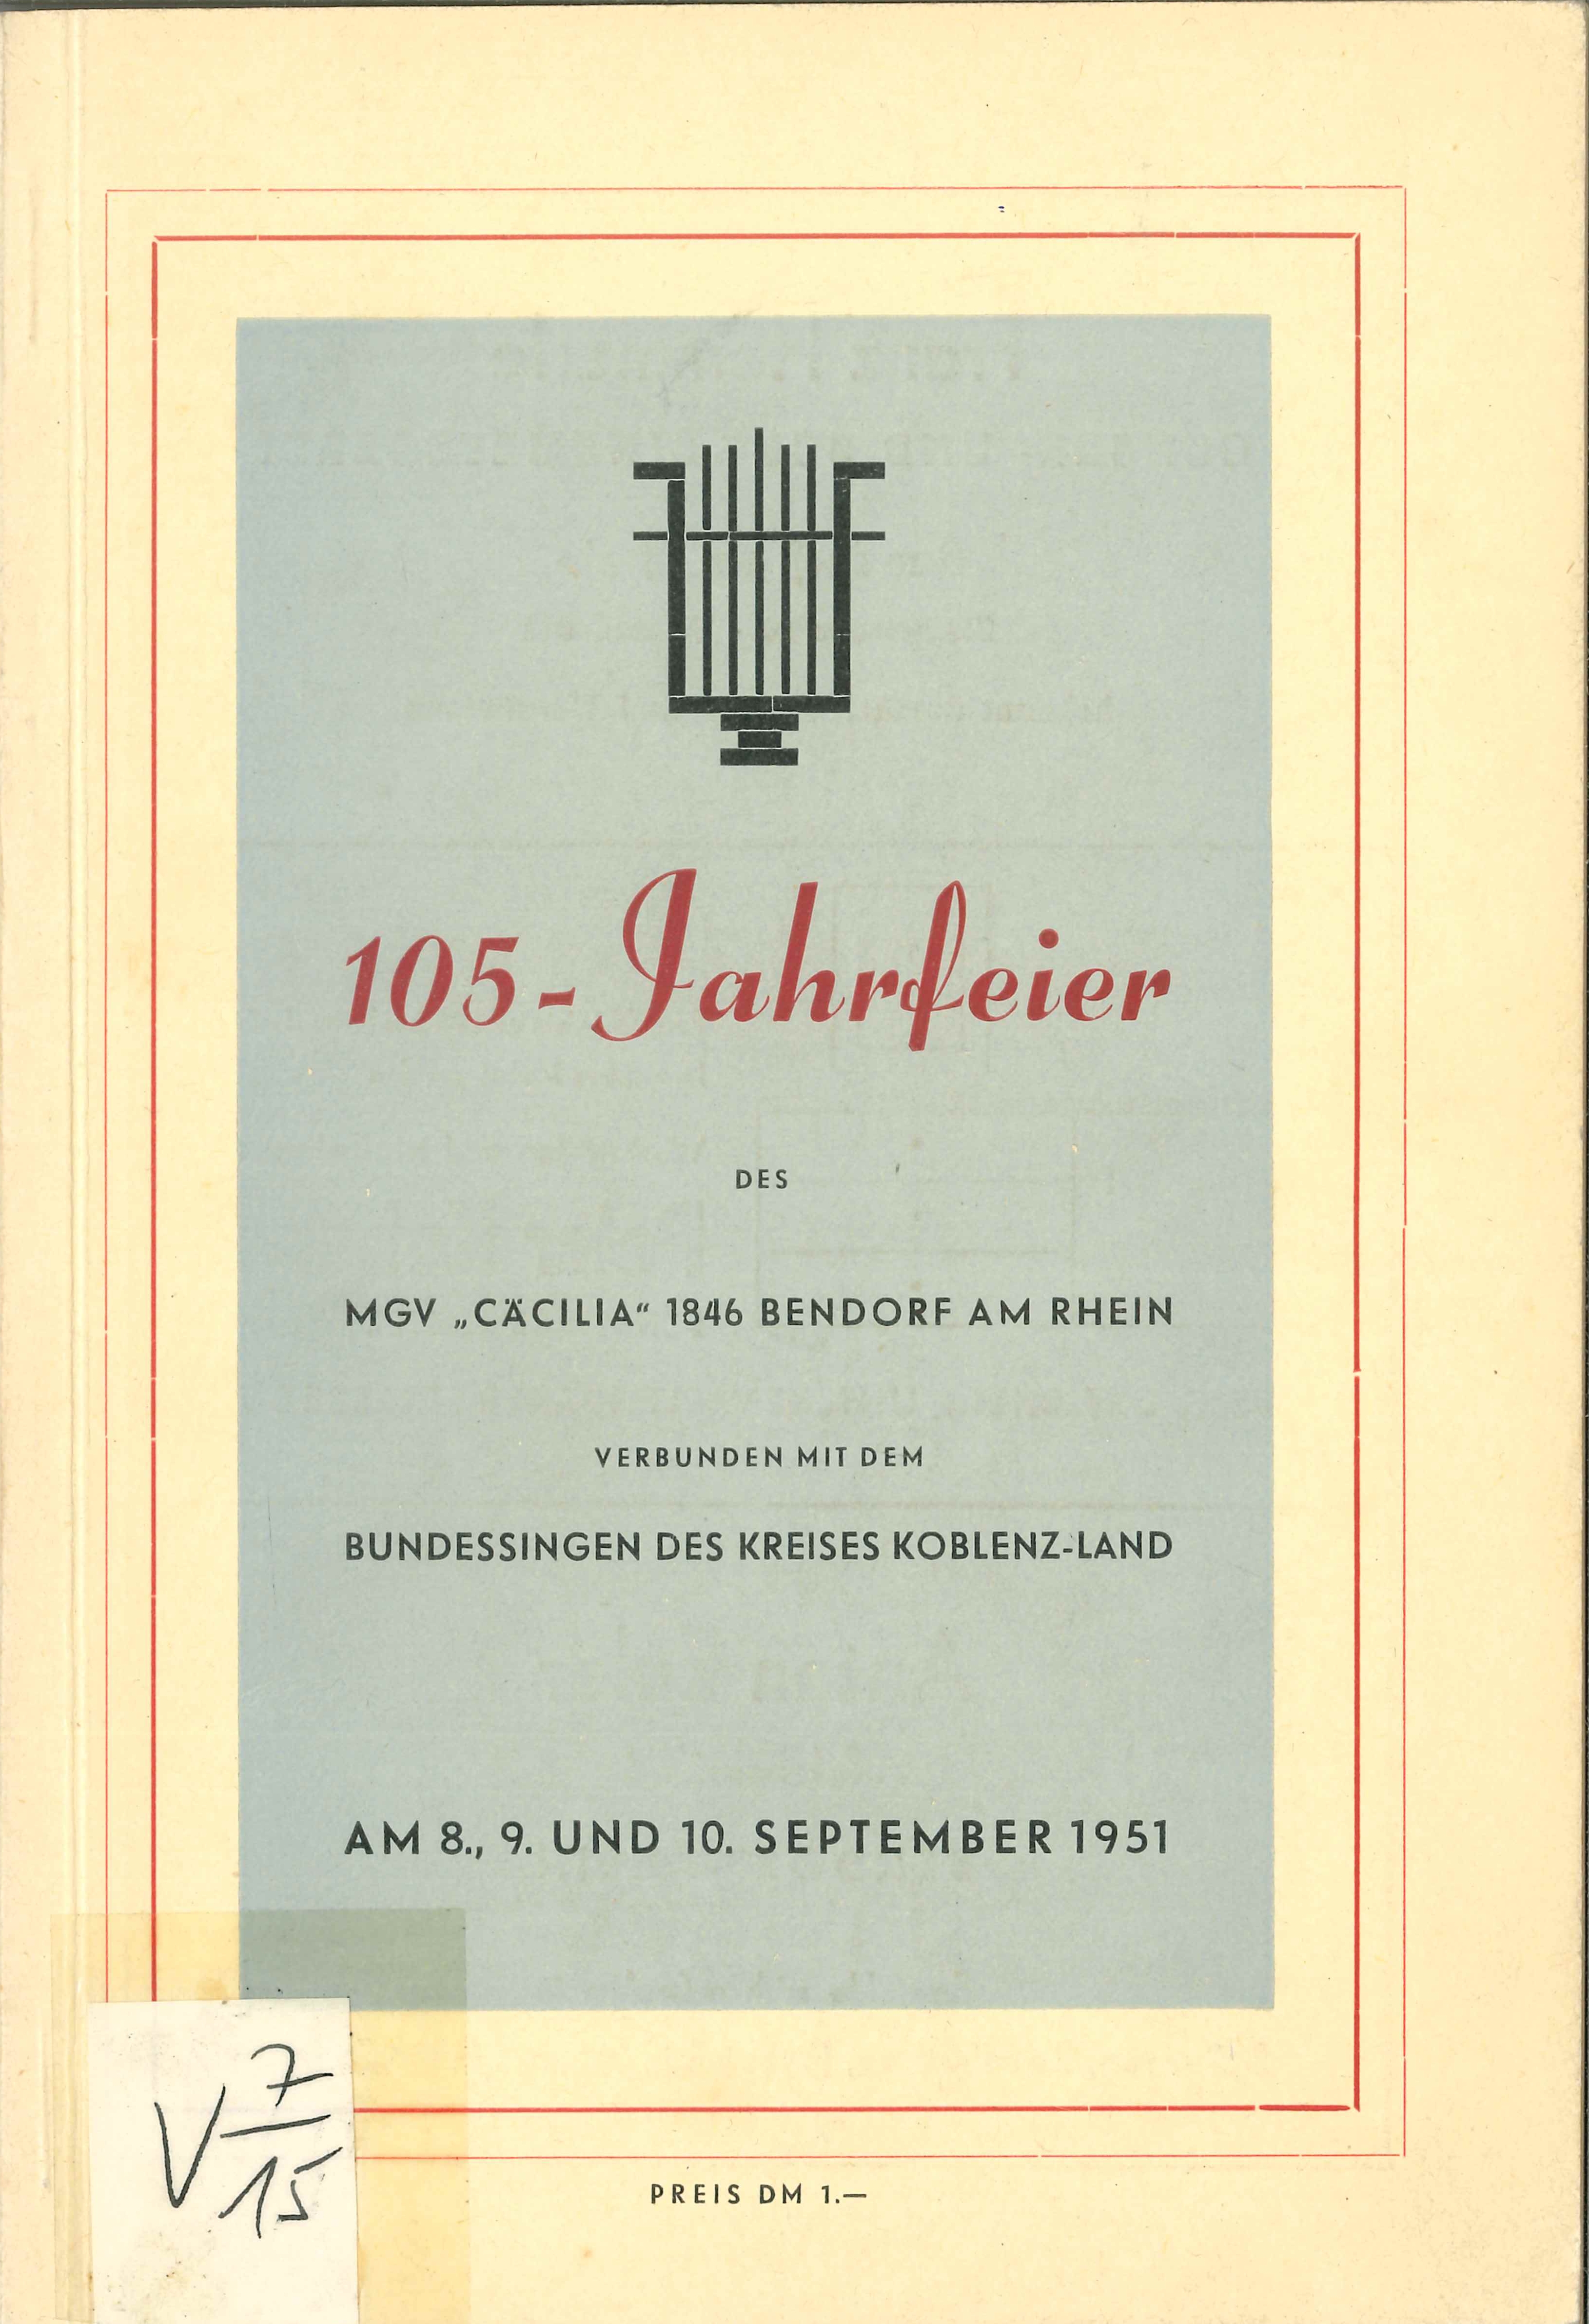 Festschrift Männergesangverein "Cäcilia" 1846 Bendorf (Rheinisches Eisenkunstguss-Museum CC BY-NC-SA)